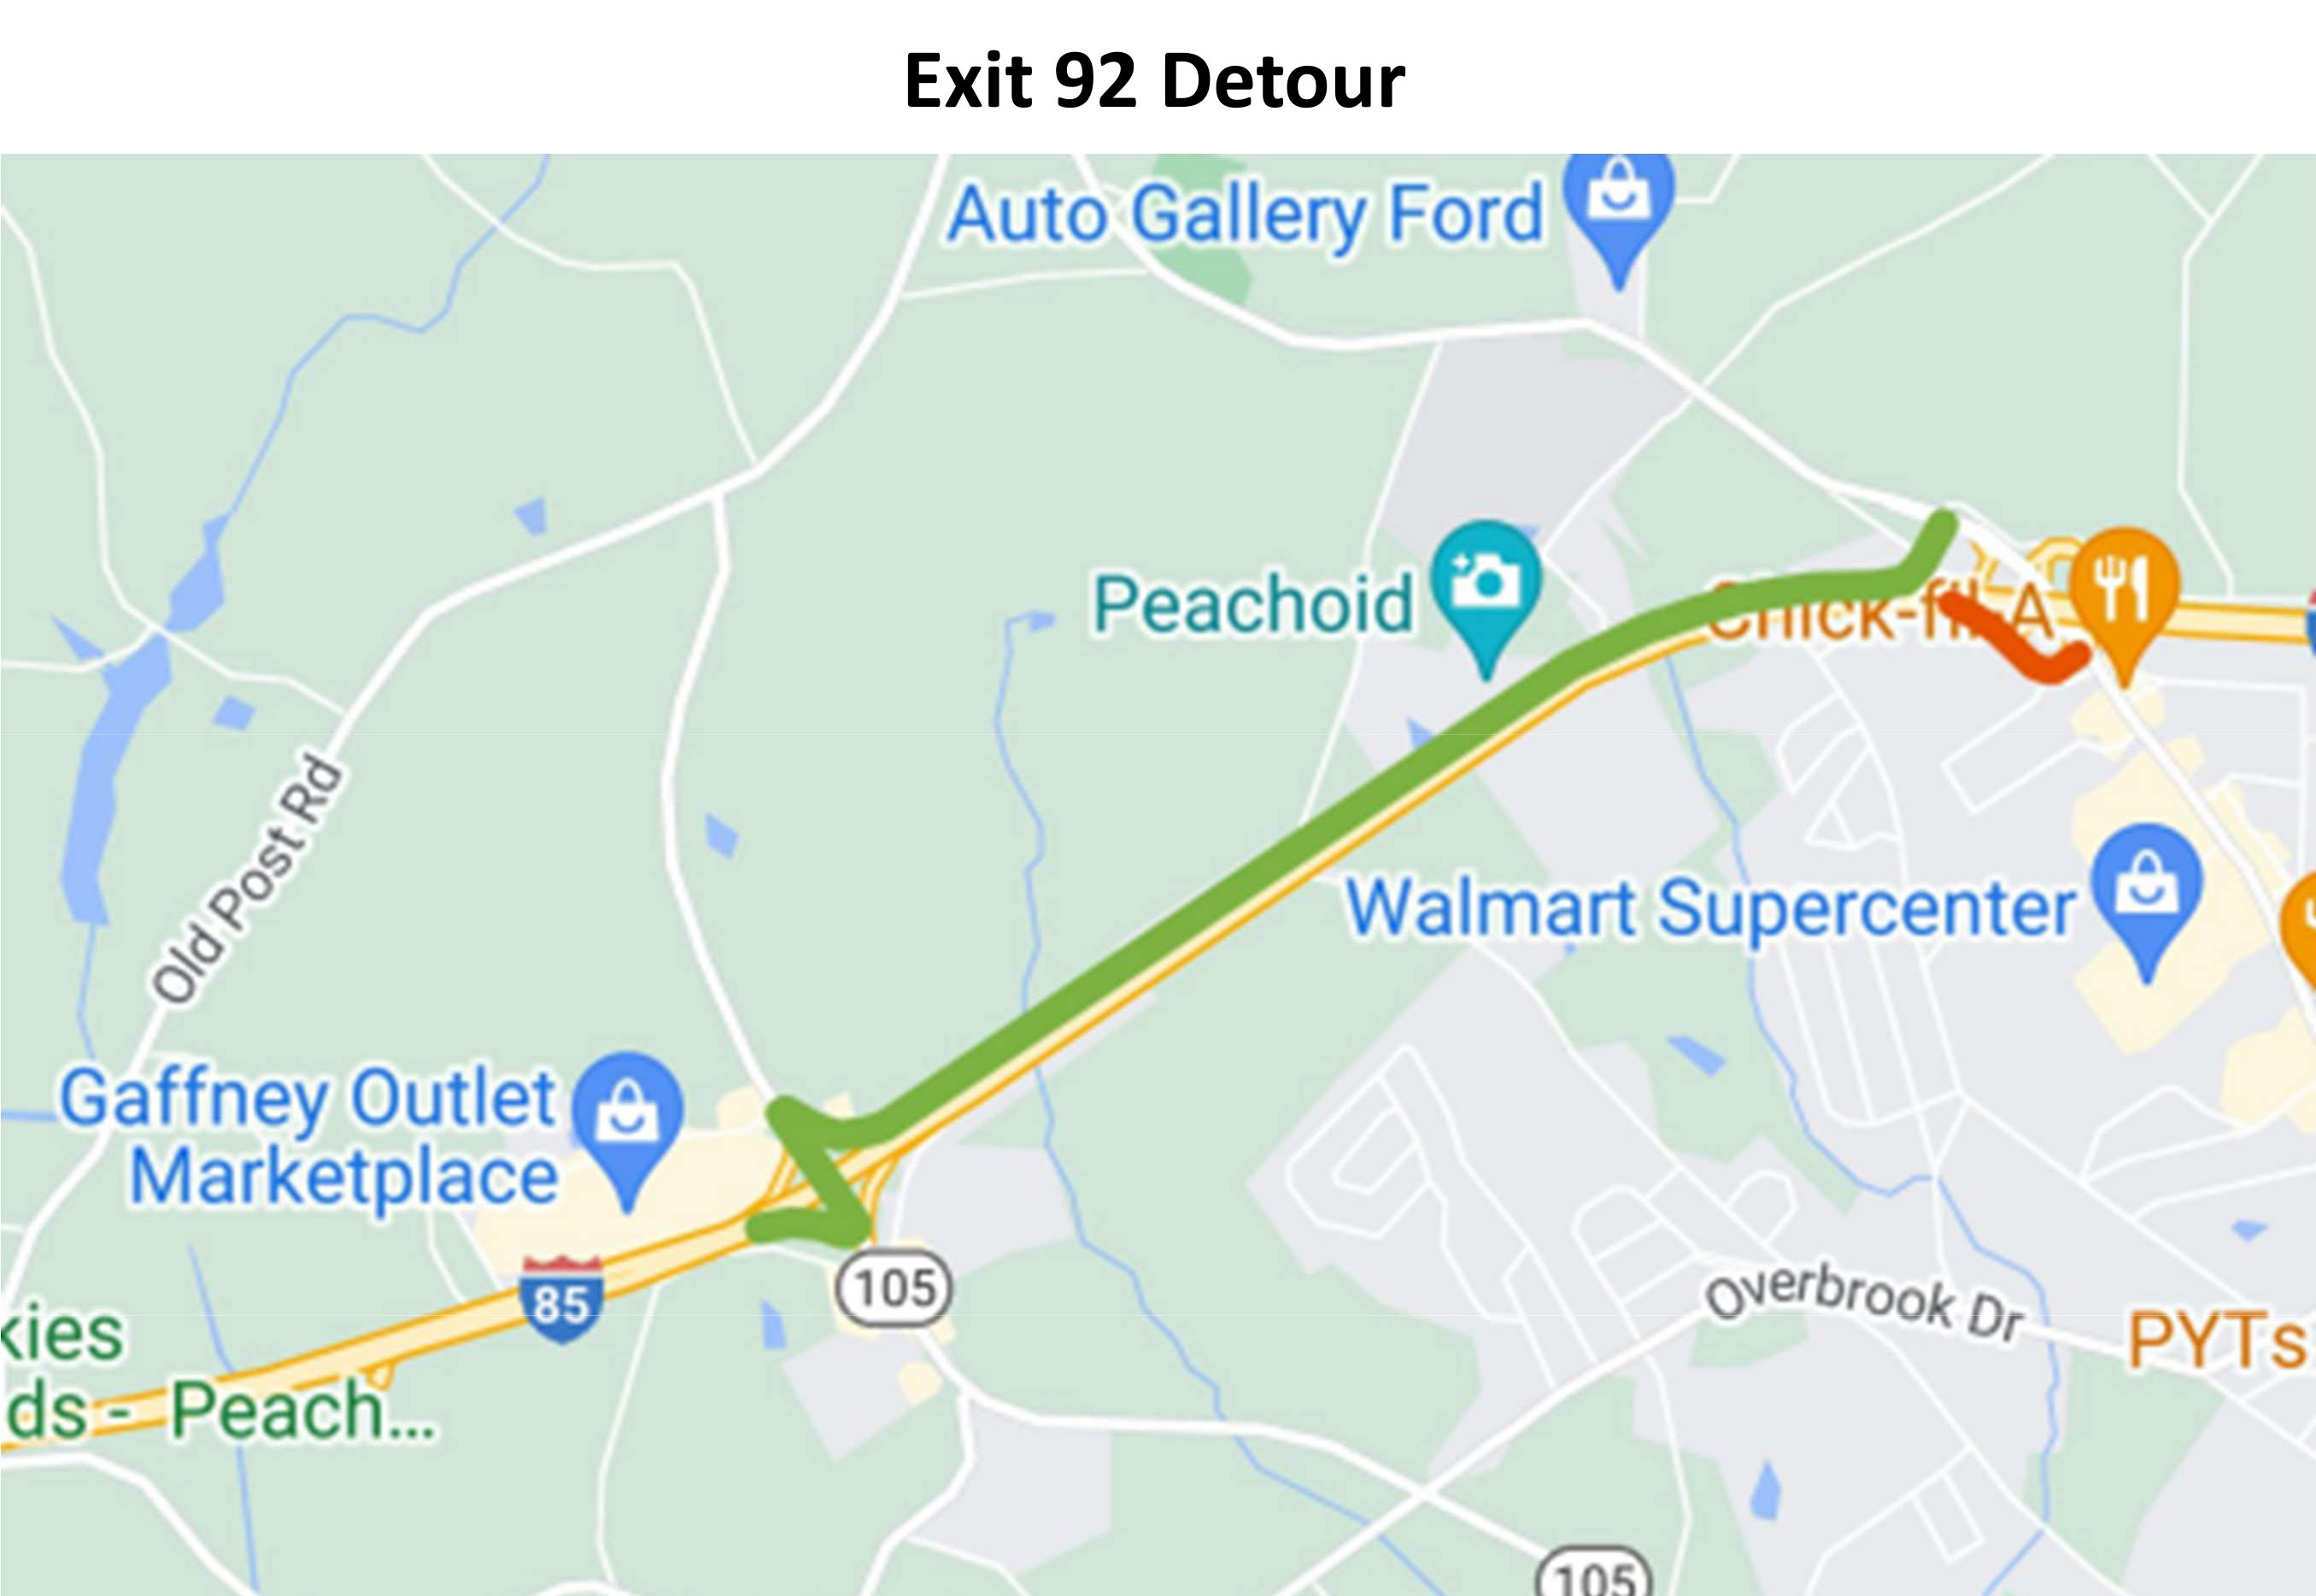 Exit 92 Detour map